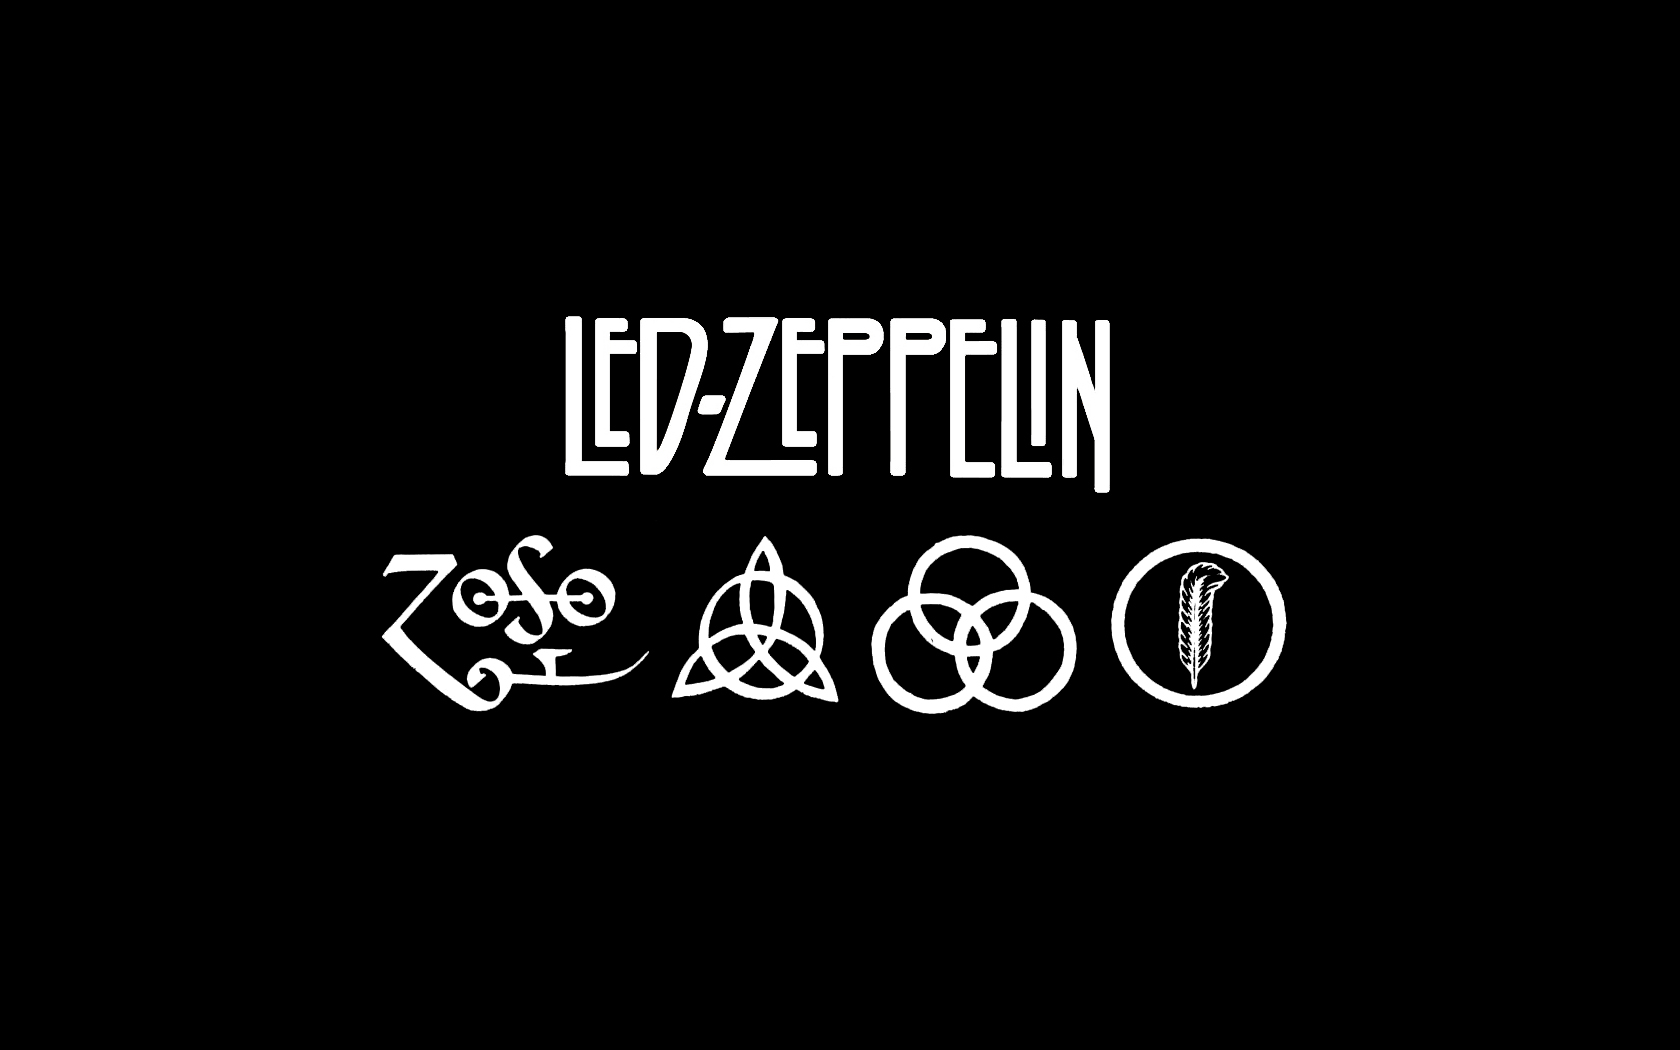 Led Zeppelin Computer Wallpapers Desktop Backgrounds 1680x1050 ID